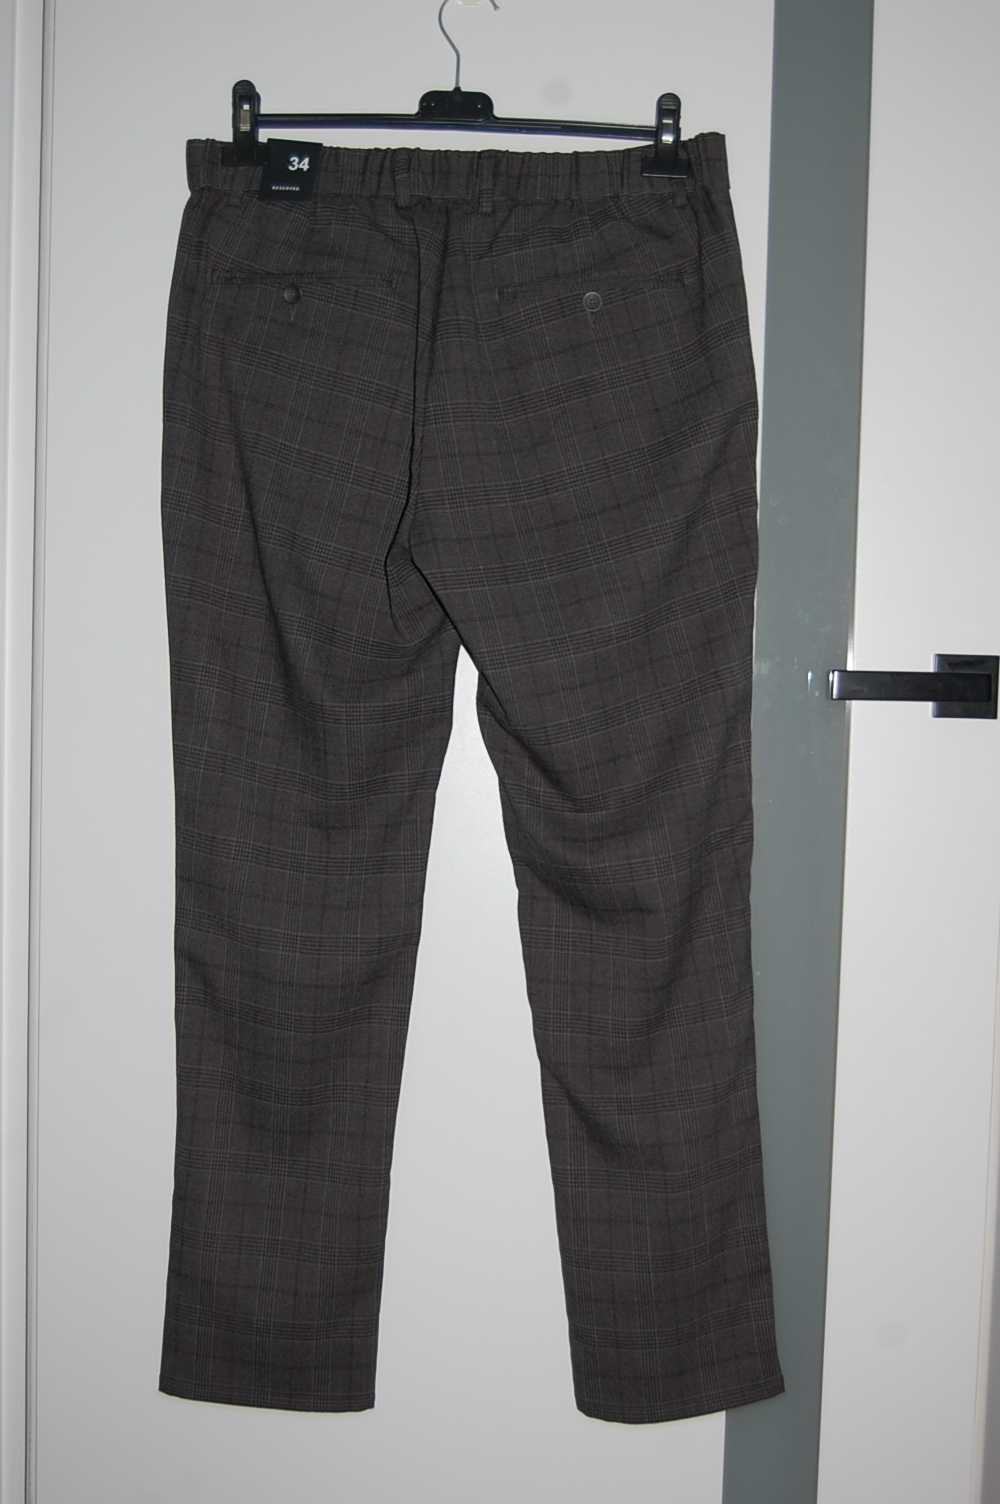 Spodnie męskie rurki w kratę r 34 XS Reserved nowe metki